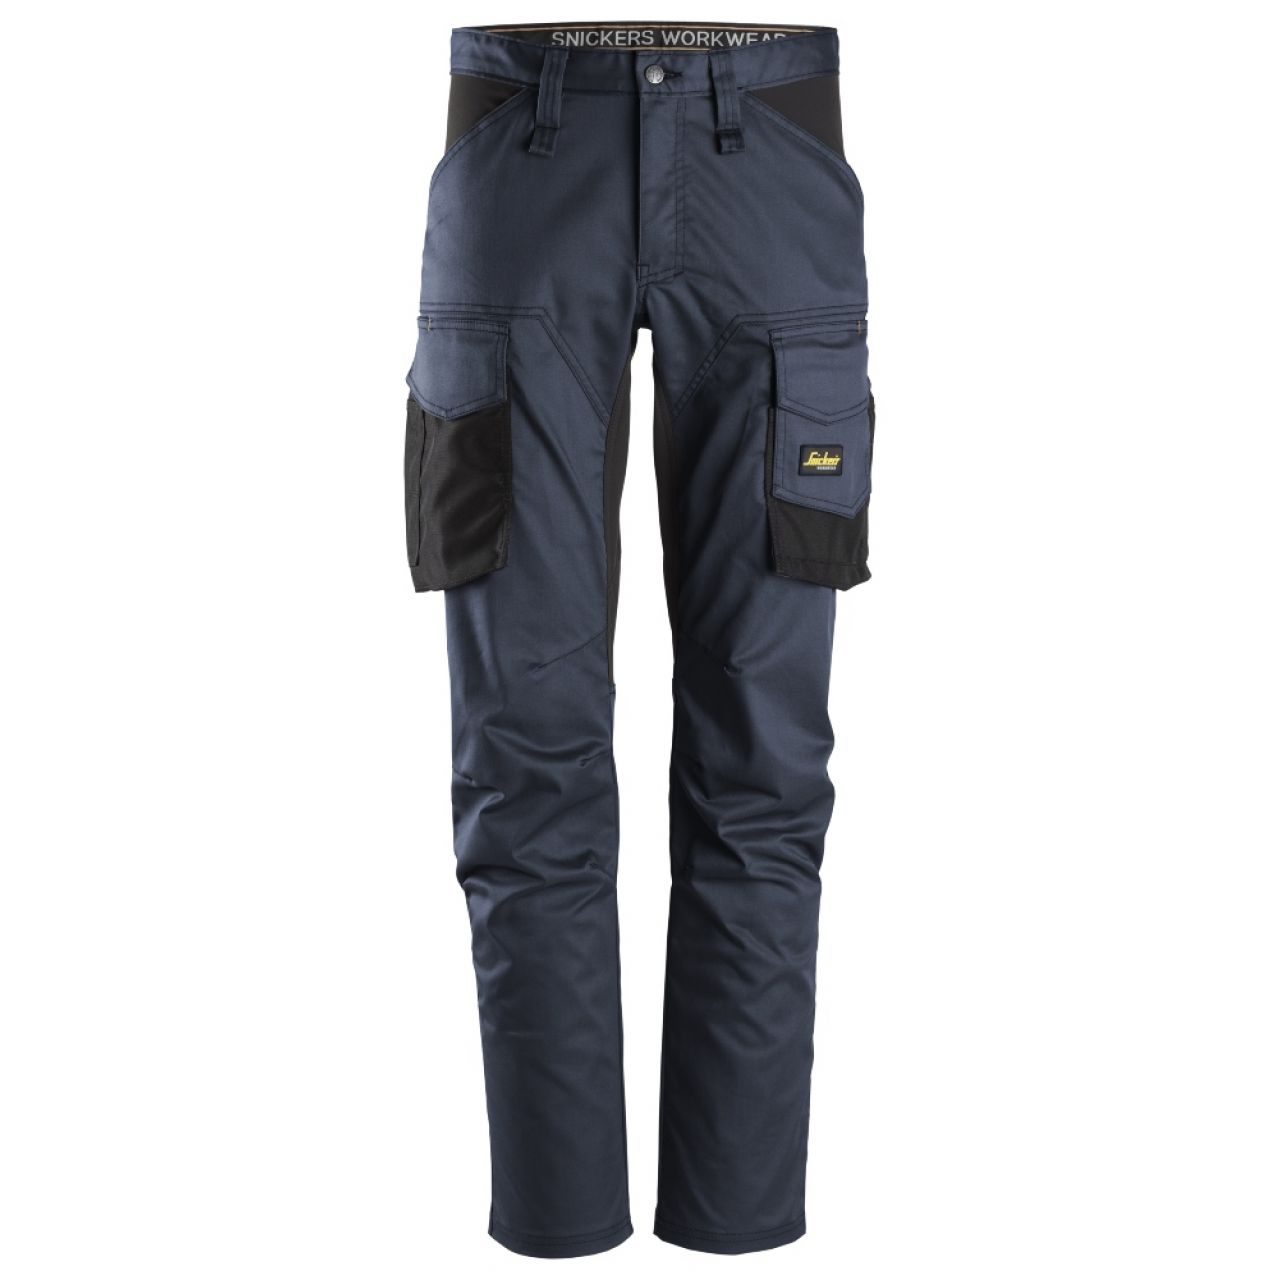 6803 Pantalones largos de trabajo elásticos sin bolsillos para las rodilleras AllroundWork azul marino-negro talla 104